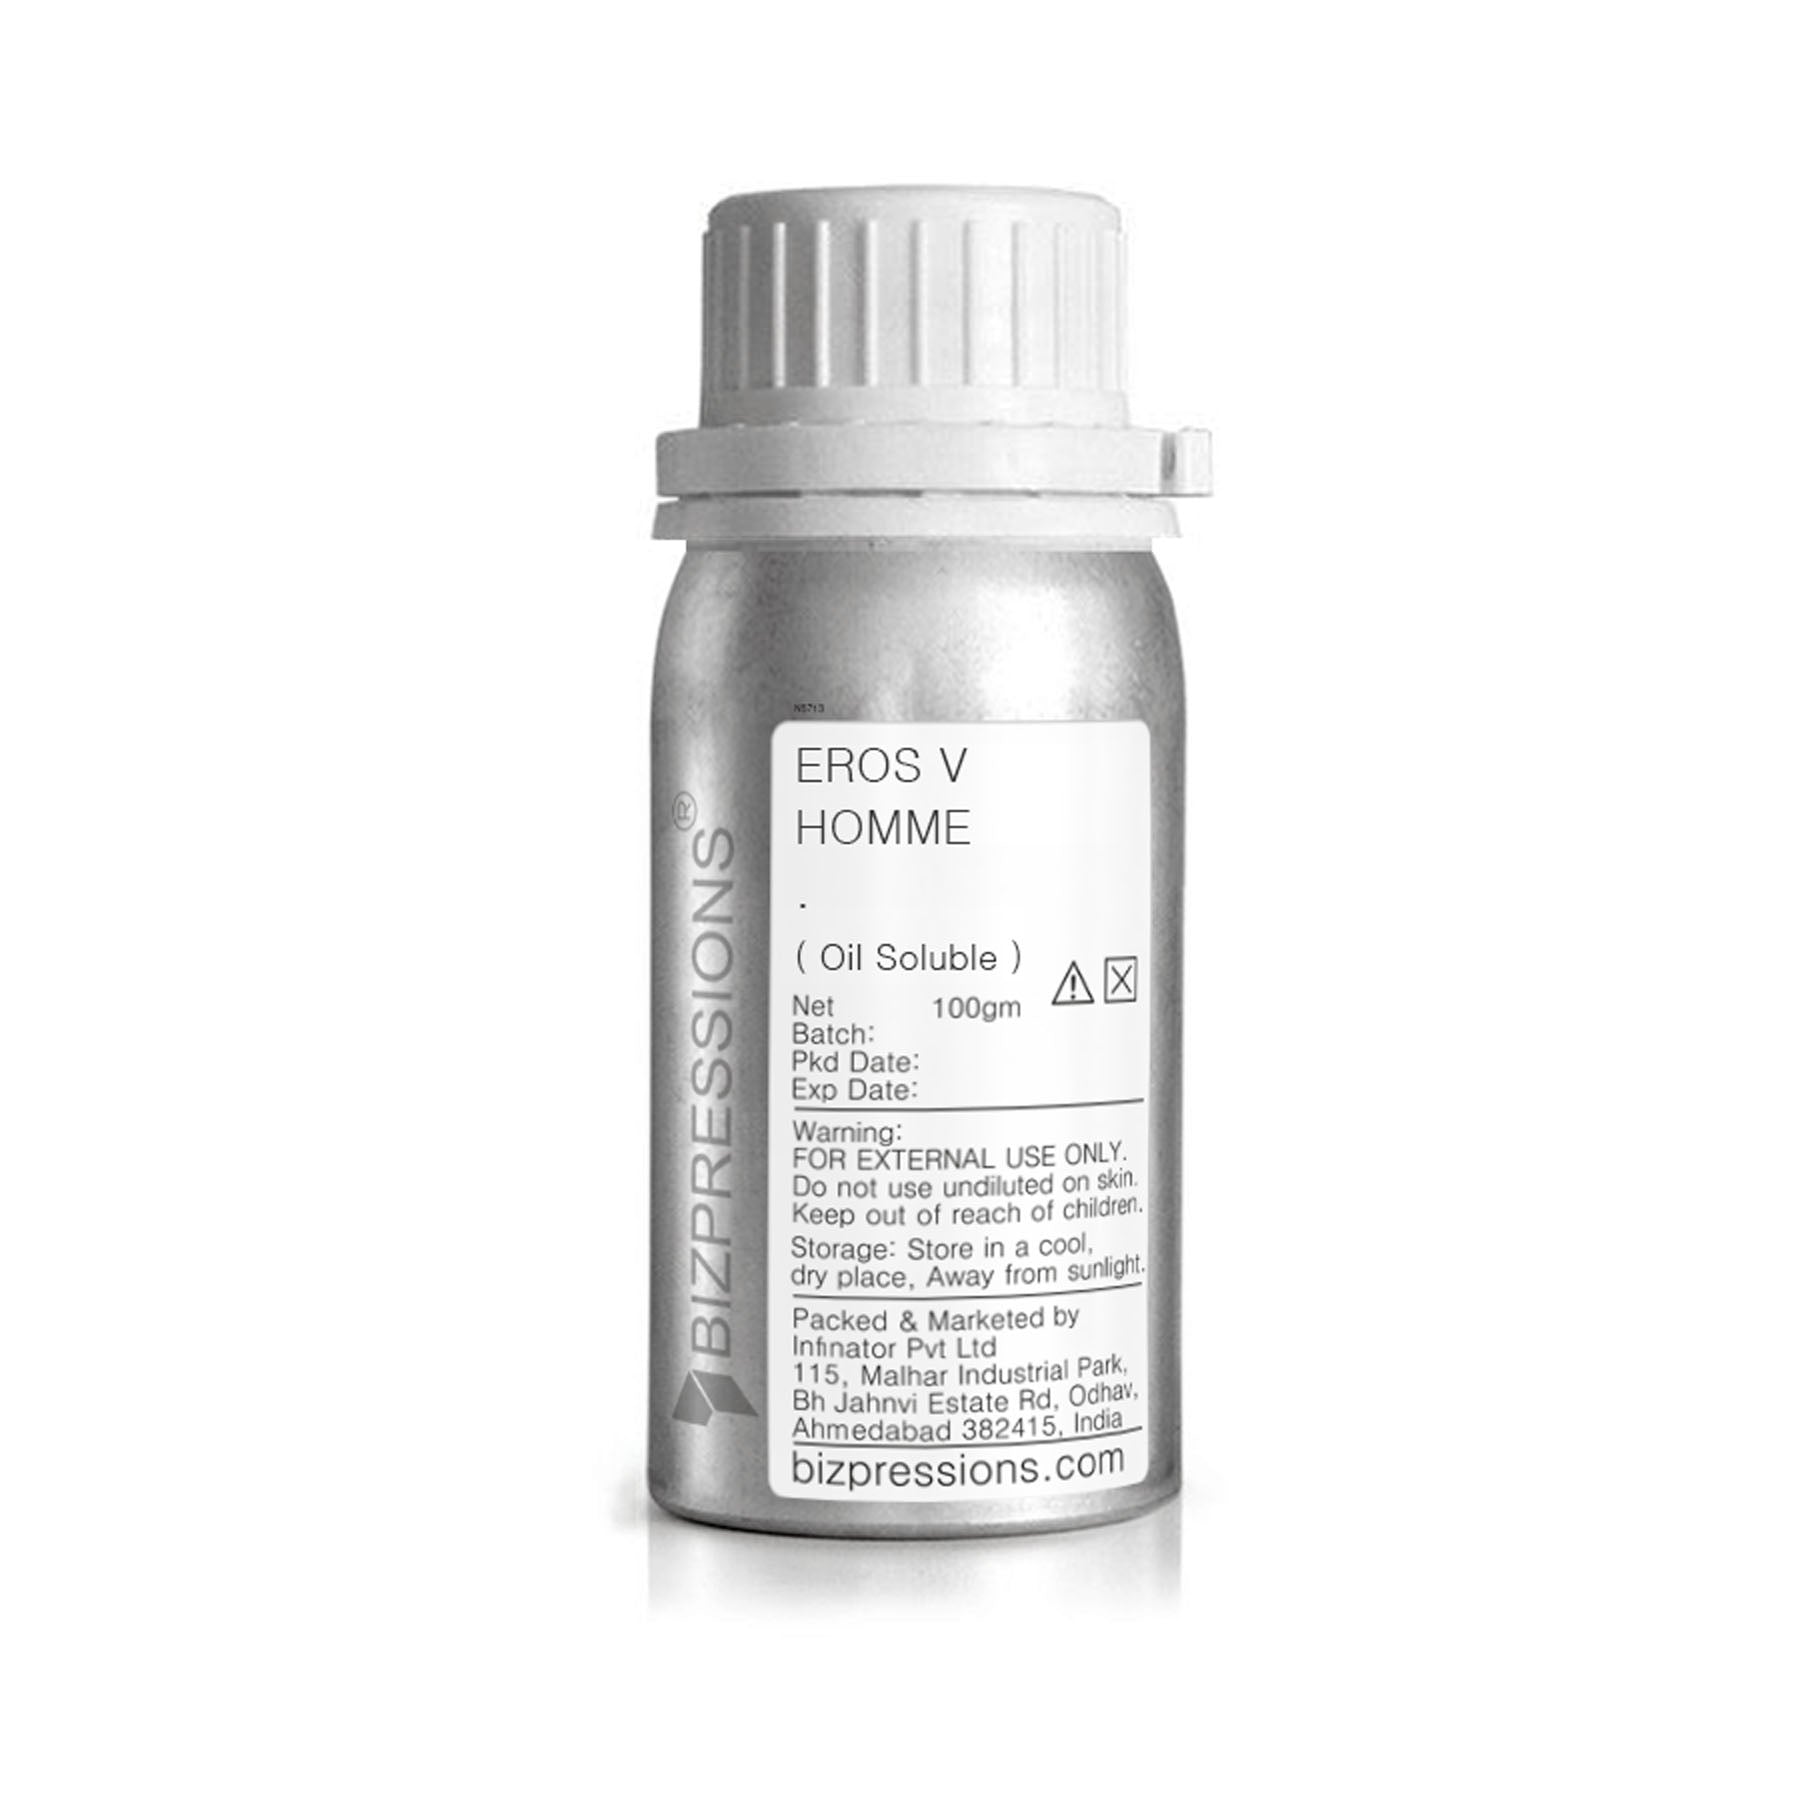 EROS V HOMME - Fragrance ( Oil Soluble ) - 100 gm